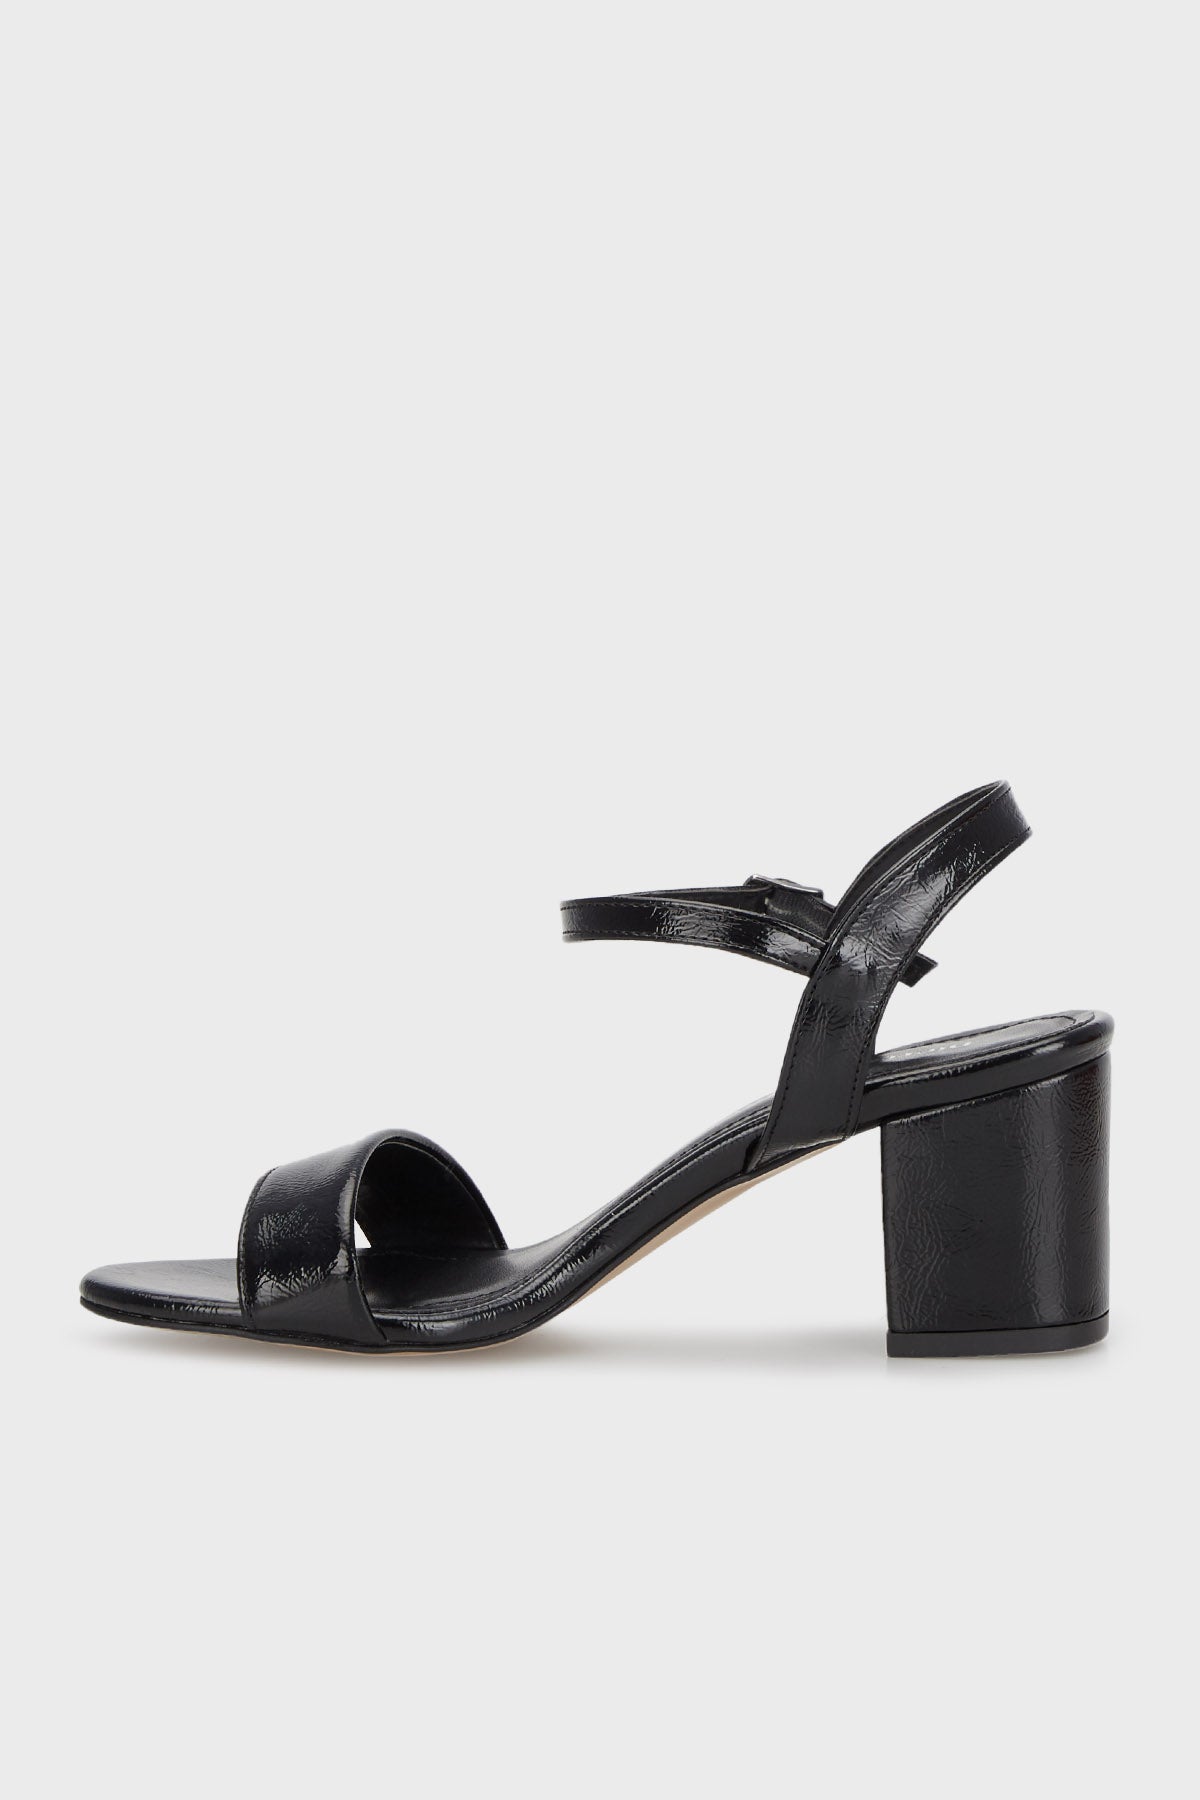 Pierre Cardin Kısa Topuklu Bayan Ayakkabı PC51863 Siyah Kırışık